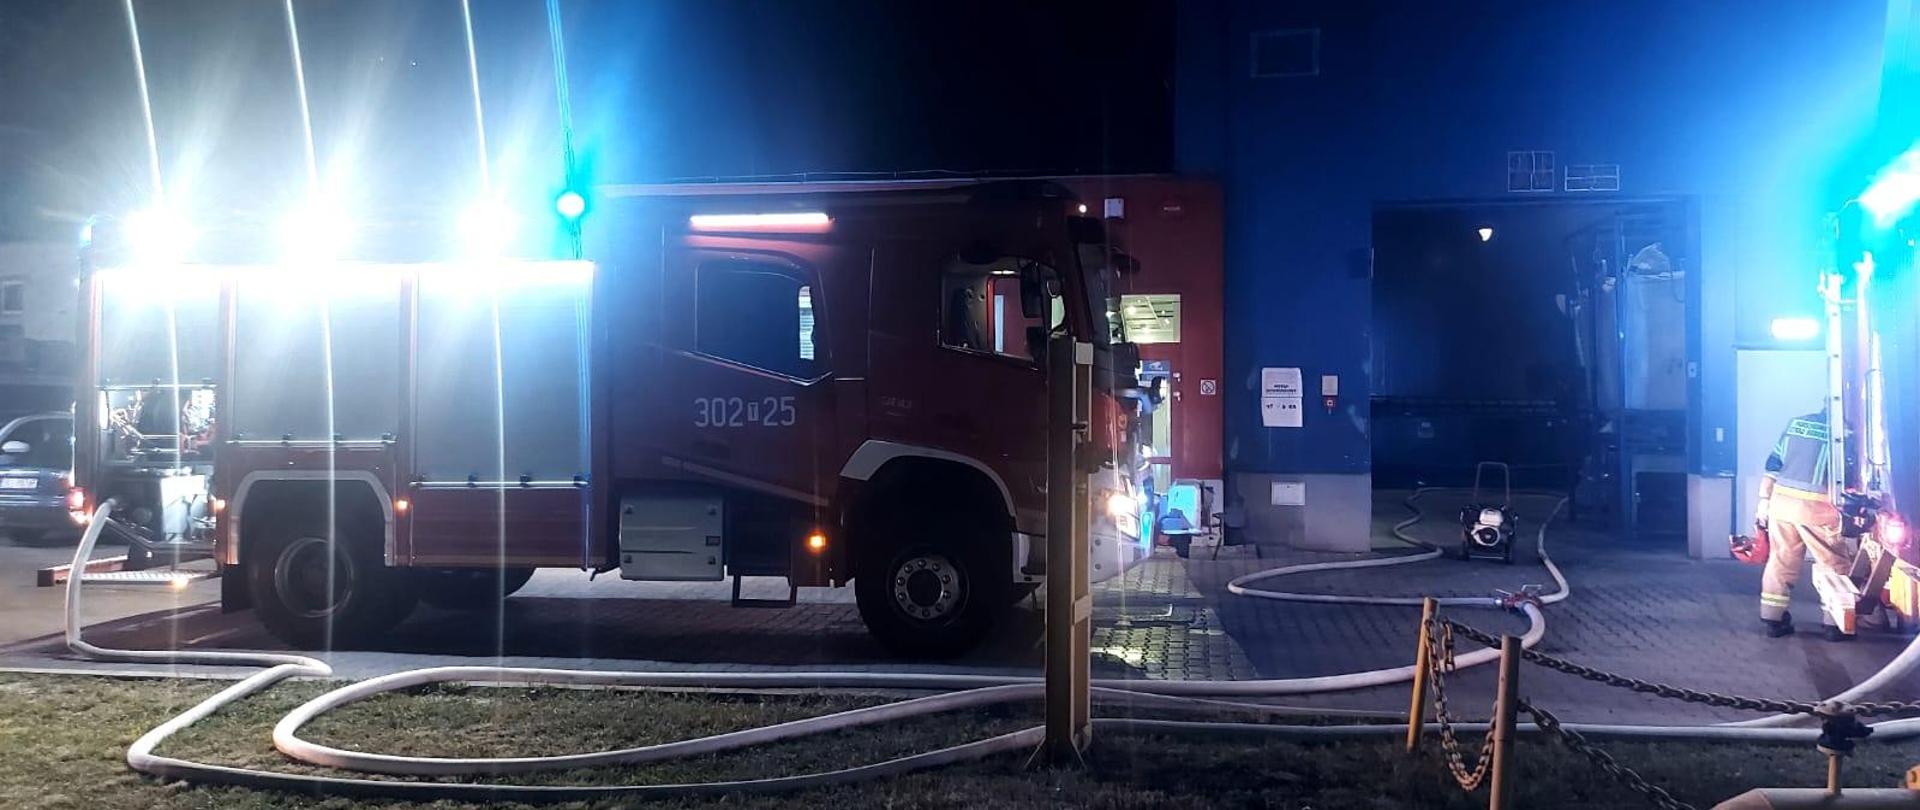 Zdjęcie przedstawia samochód pożarniczy z rozwiniętymi linami gaśniczymi stojący przed otwartą bramą wjazdową do budynku hali gdzie doszło do pożaru.